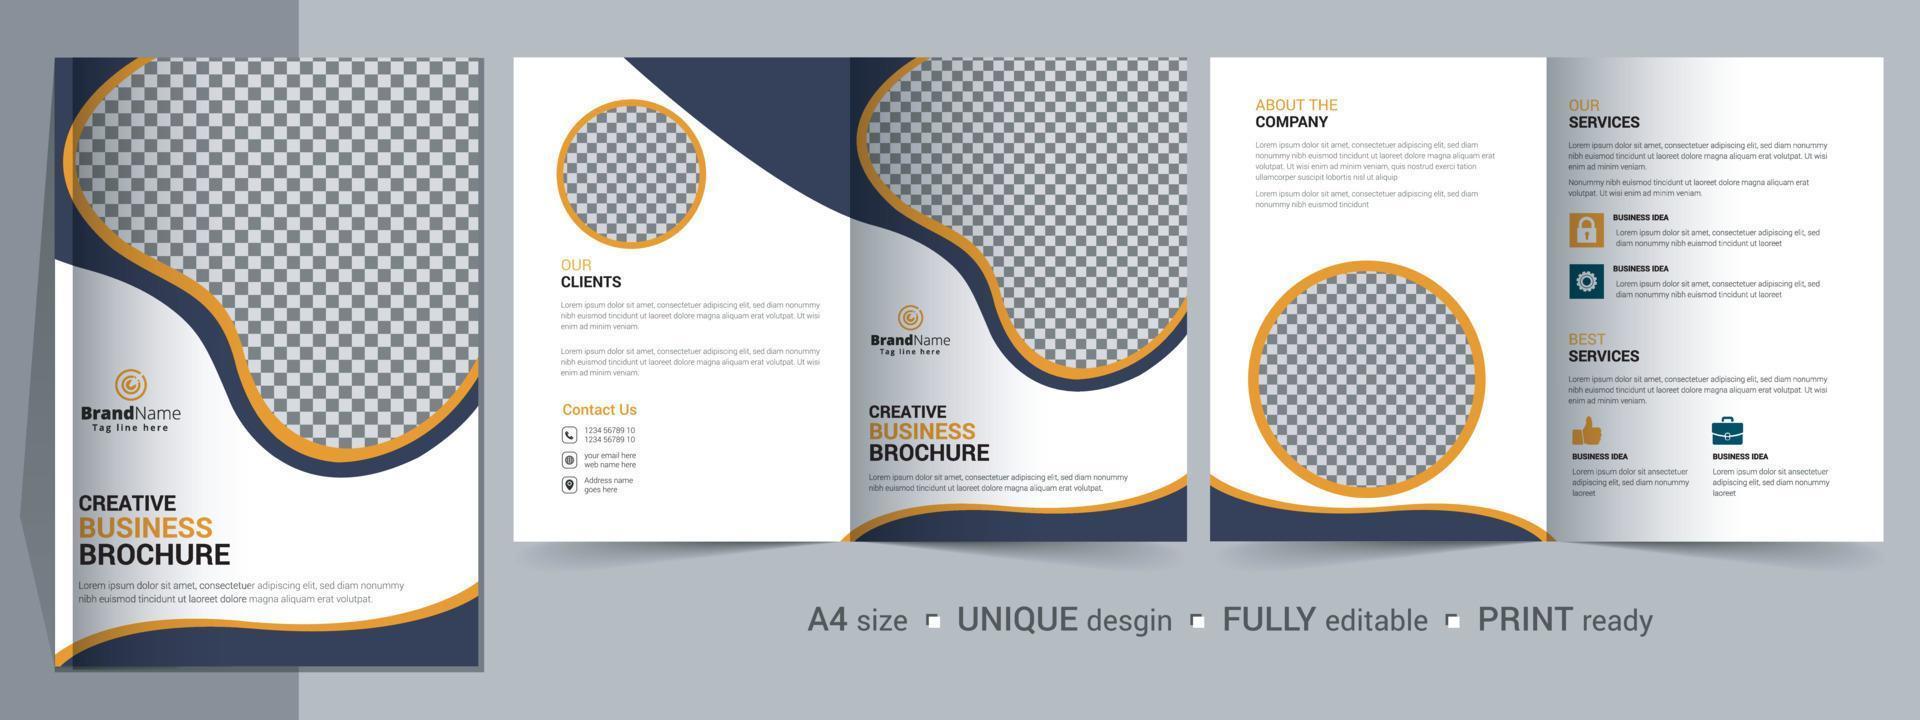 plantilla de folleto corporativo bifold, catálogo, diseño de plantilla de folleto totalmente editable. vector